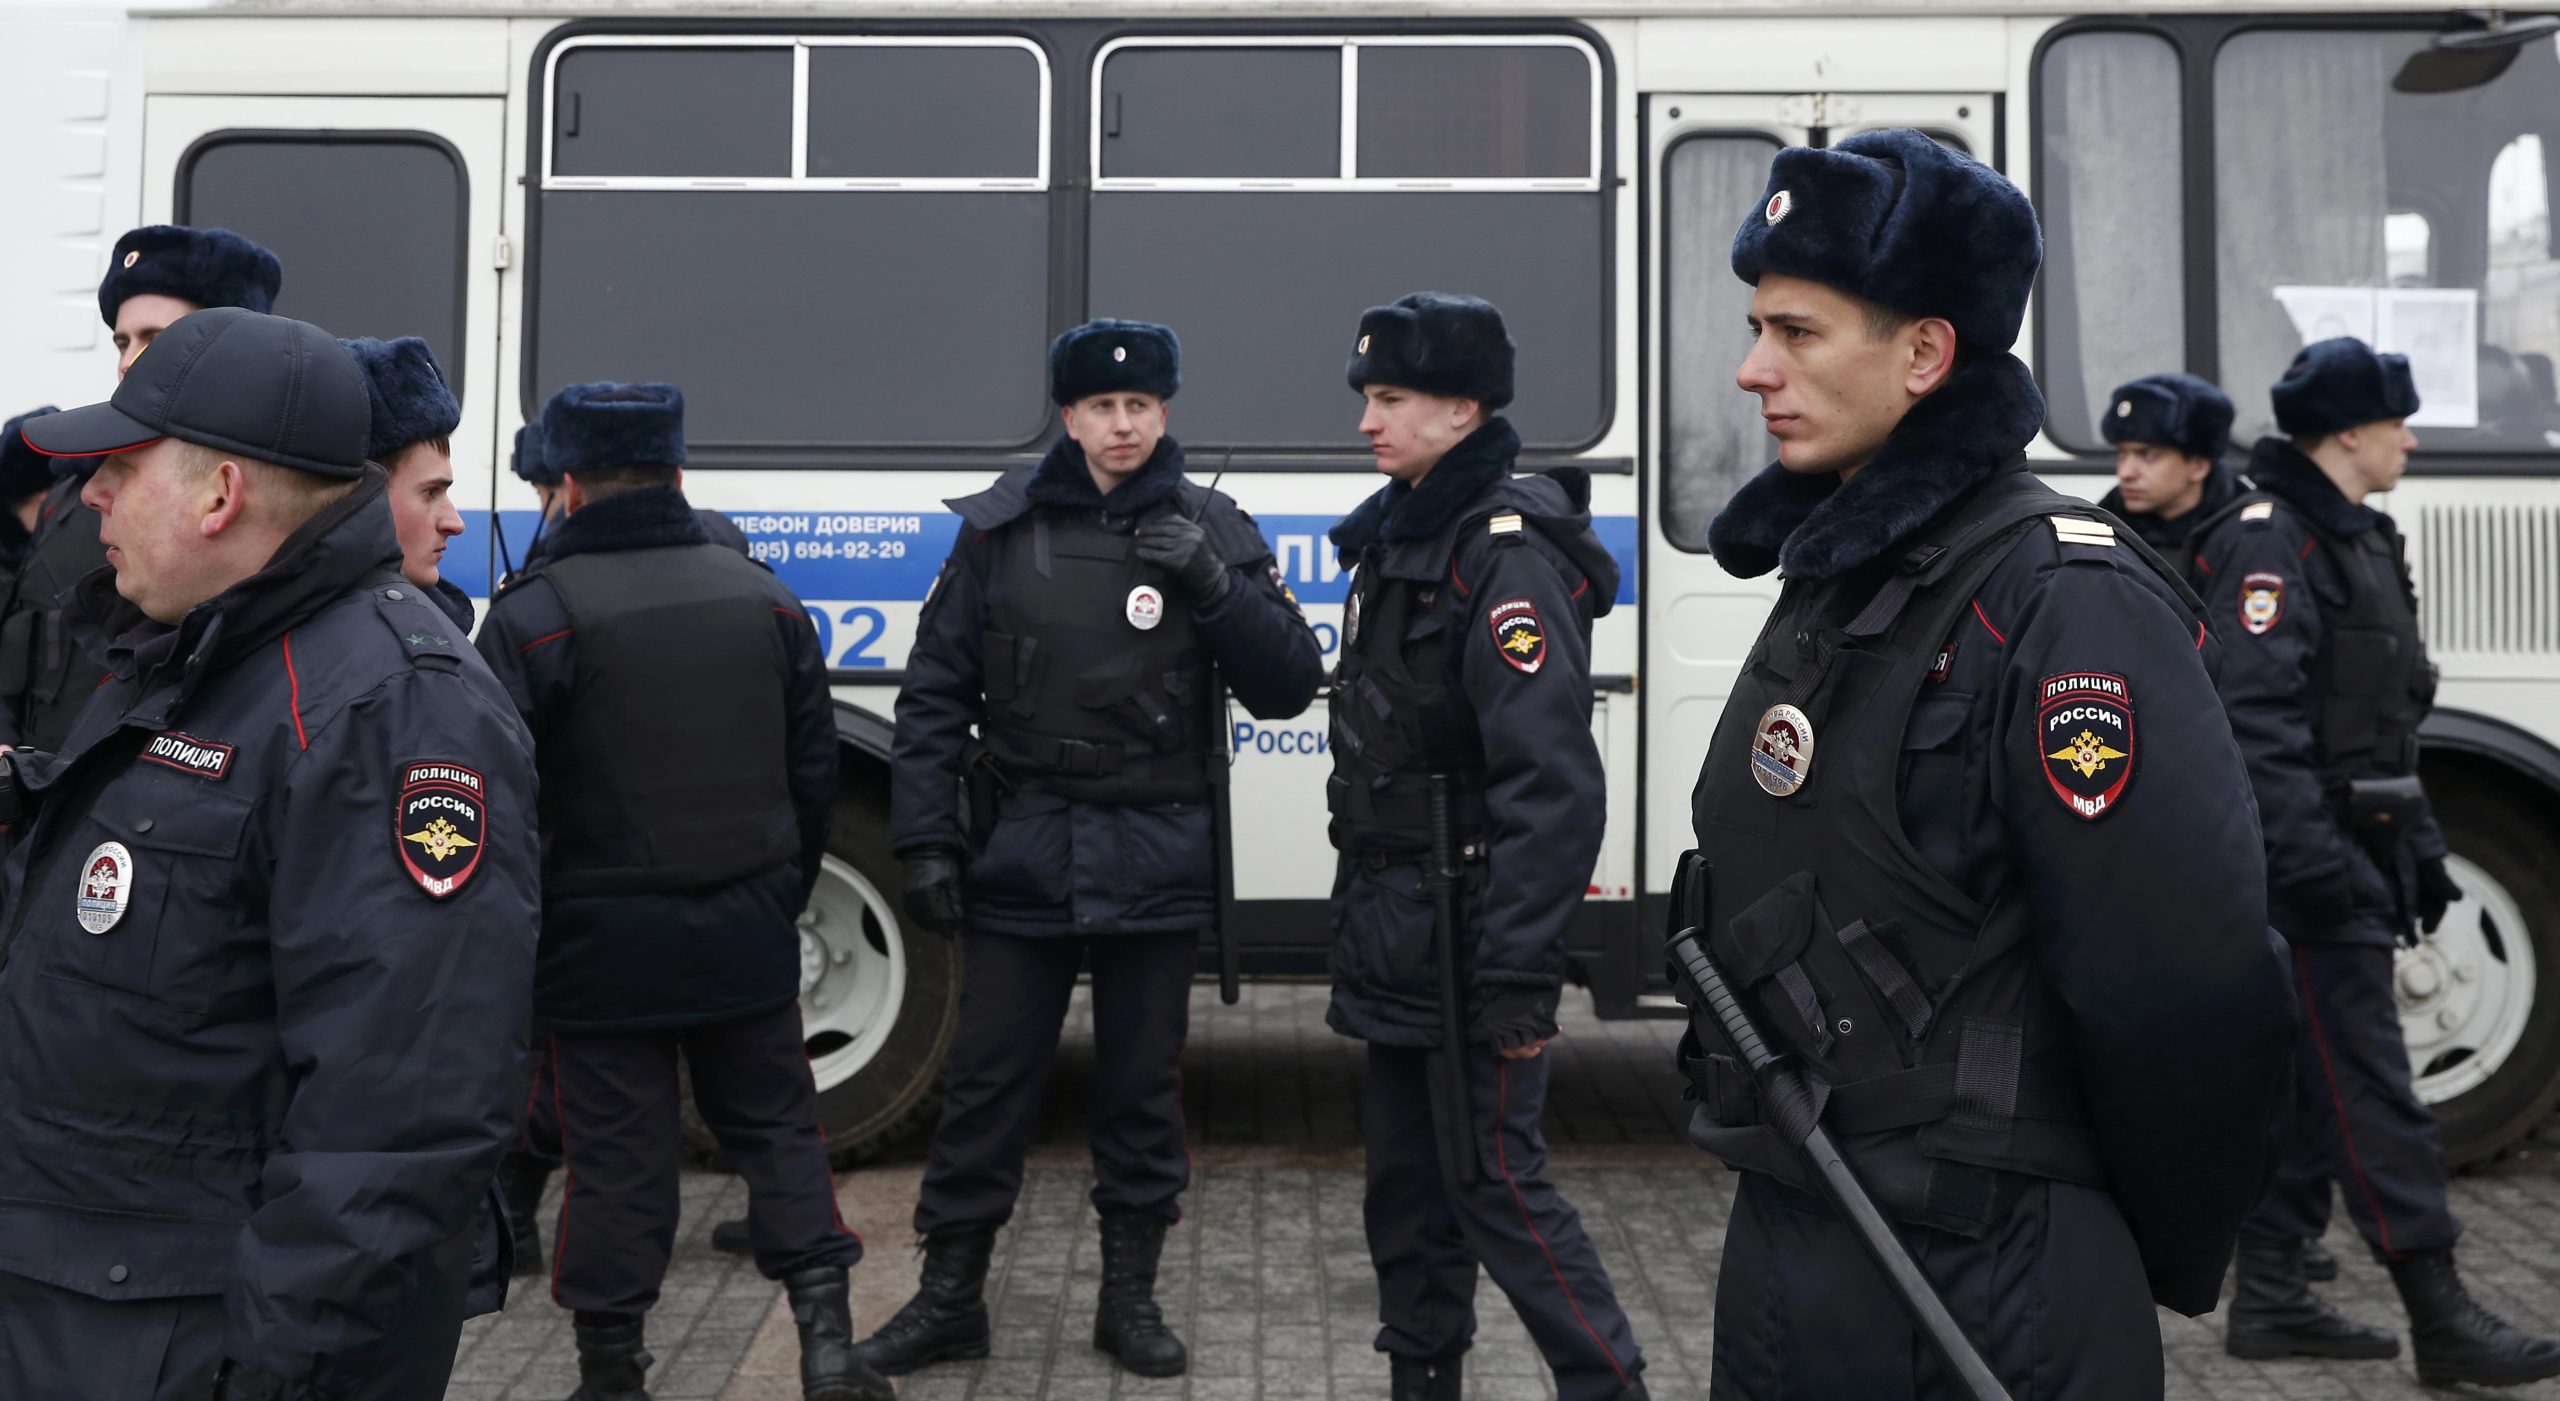   إحباط هجمات إرهابية خطط لها داعش فى موسكو